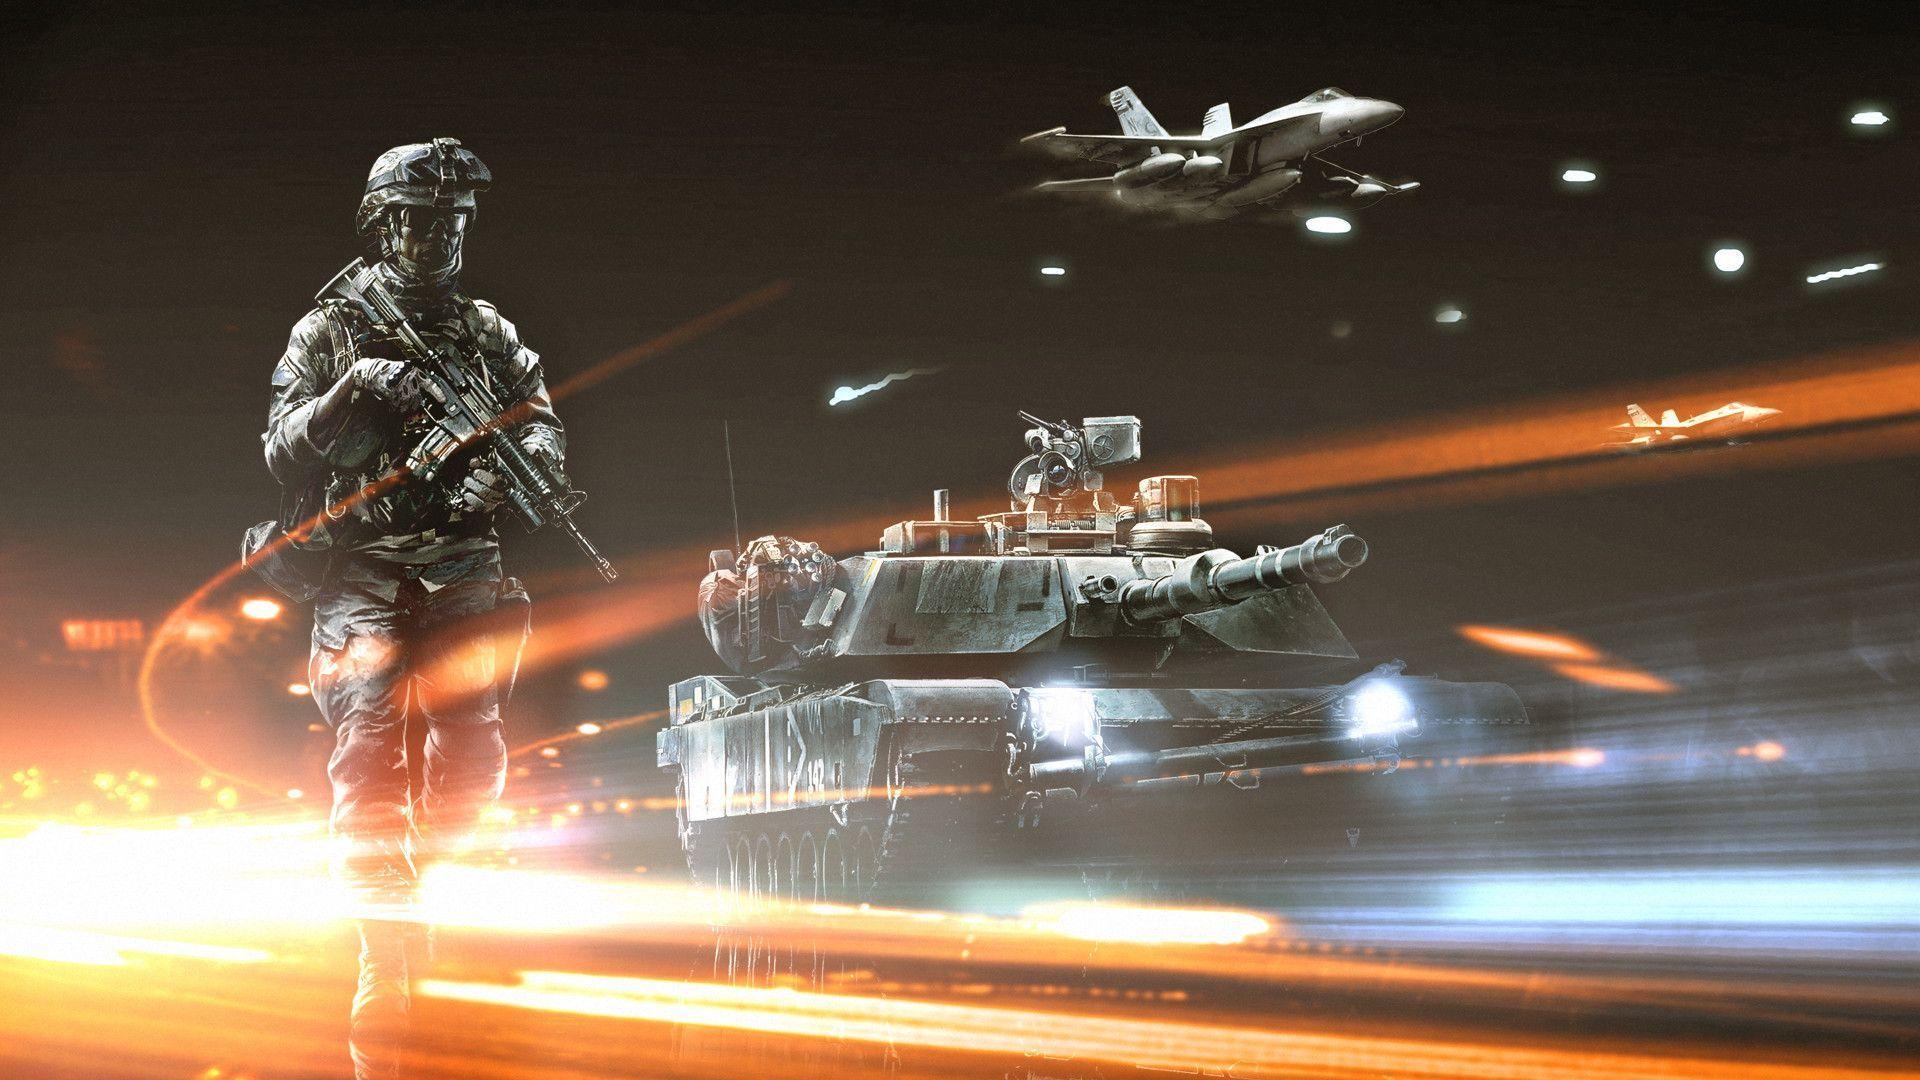 Battlefield 3 HD 1080p Wallpaper. PicsWallpaper